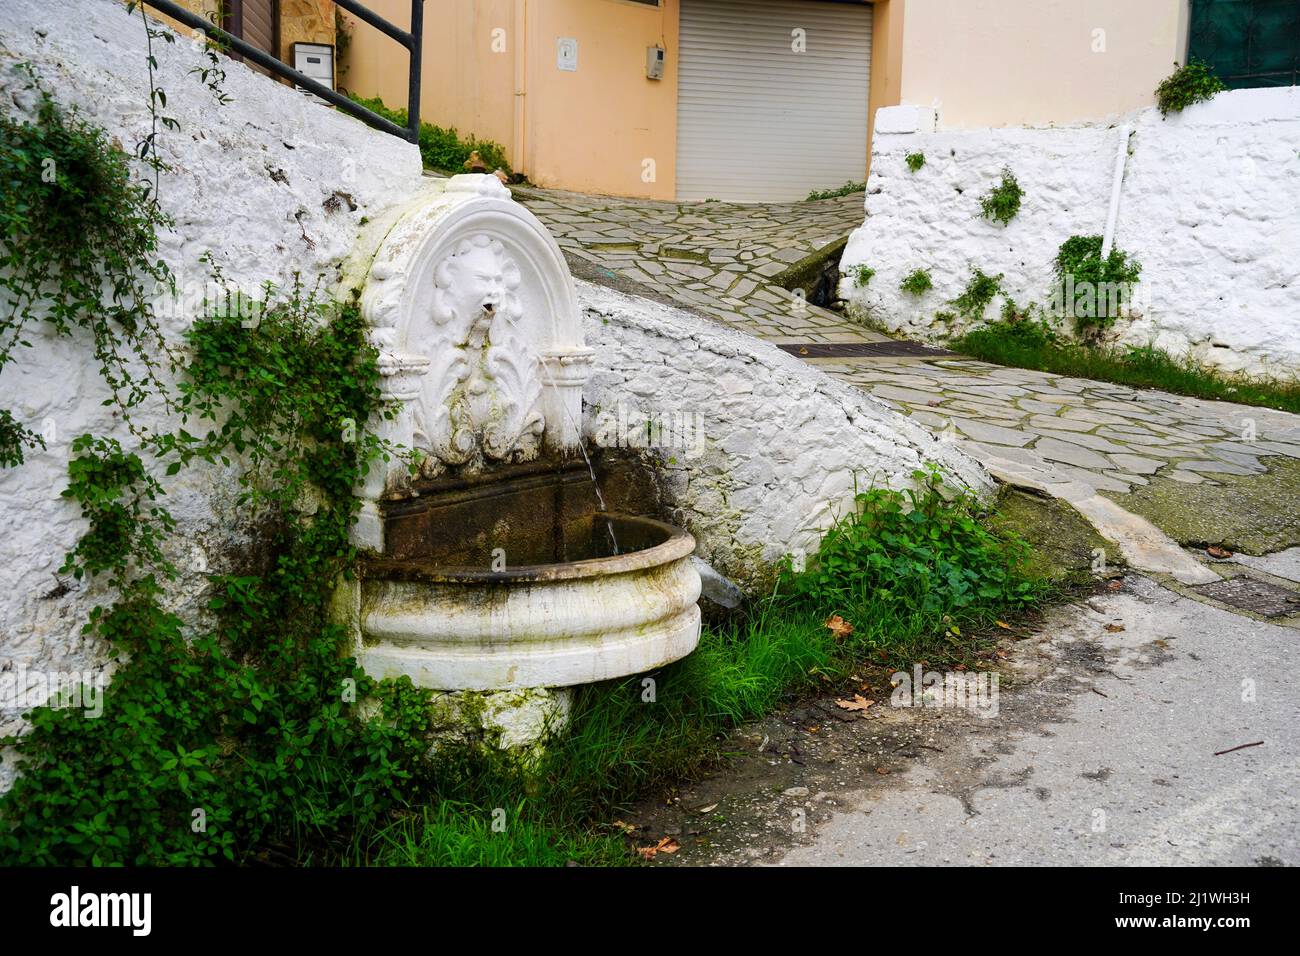 Casa tradicional griega encalada y fuente de agua pública de Chania, Creta, Grecia Foto de stock